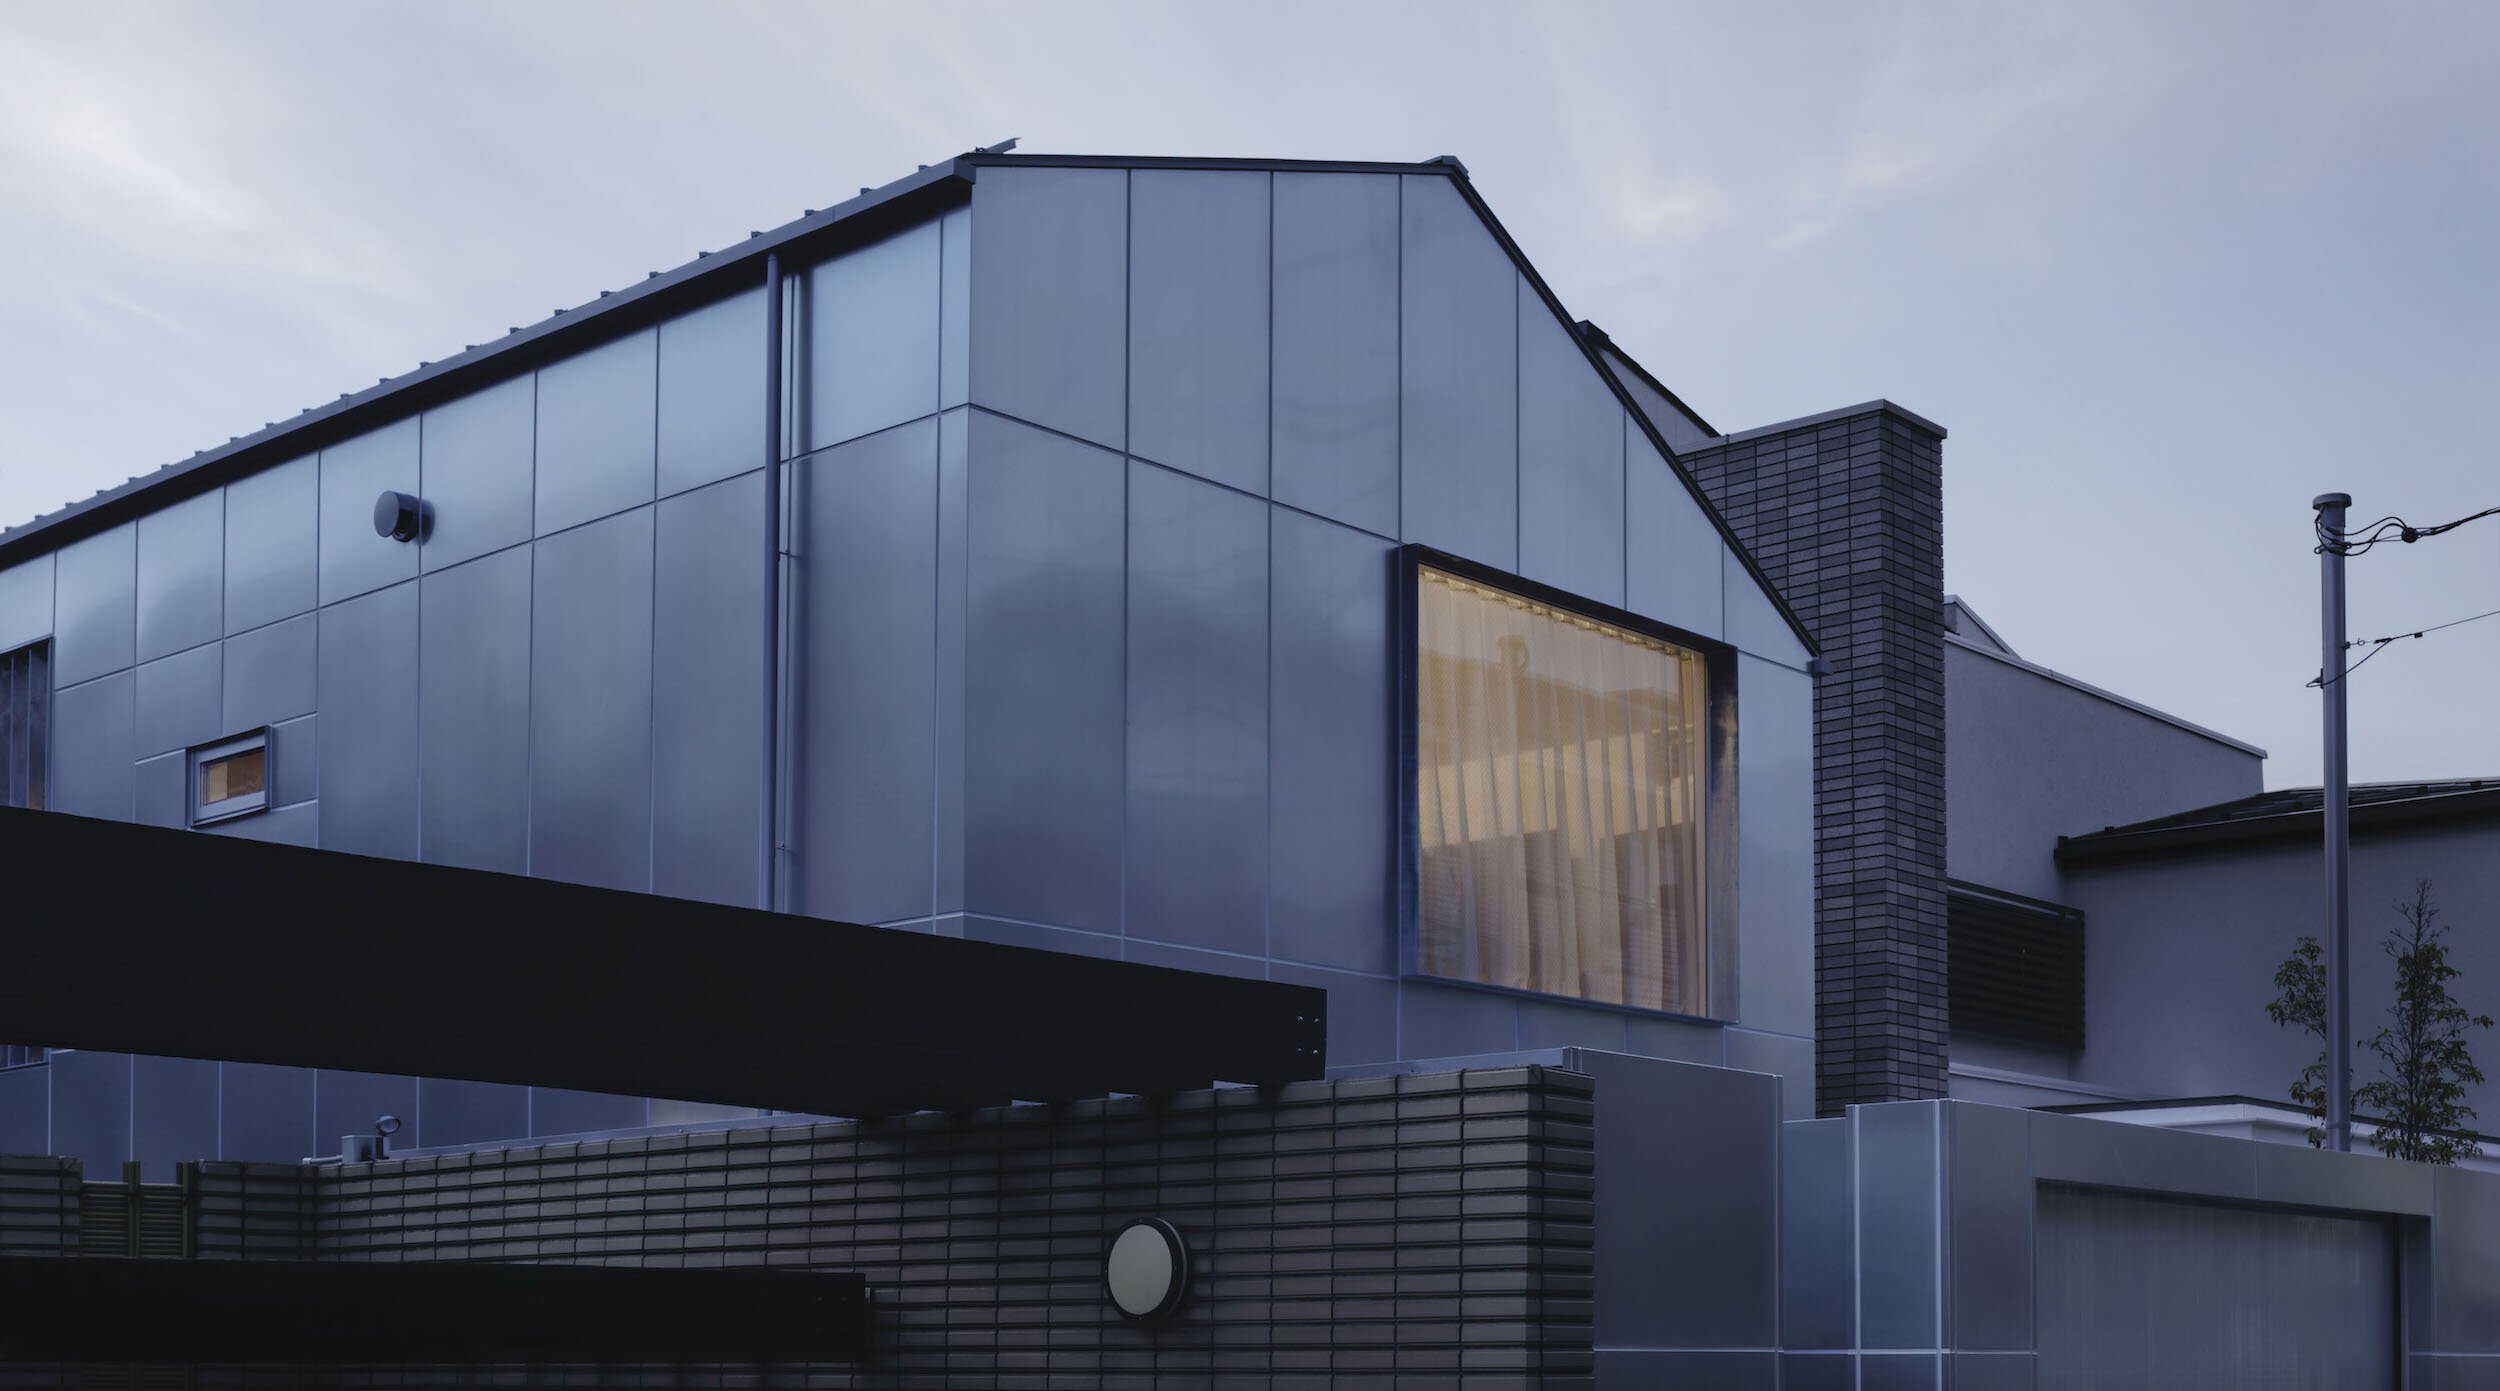  CASE-REAL（ケース・リアル）の二俣公一がデザインした住宅「東五反田の家」外観。外装には亜鉛メッキ鋼板を用いた 